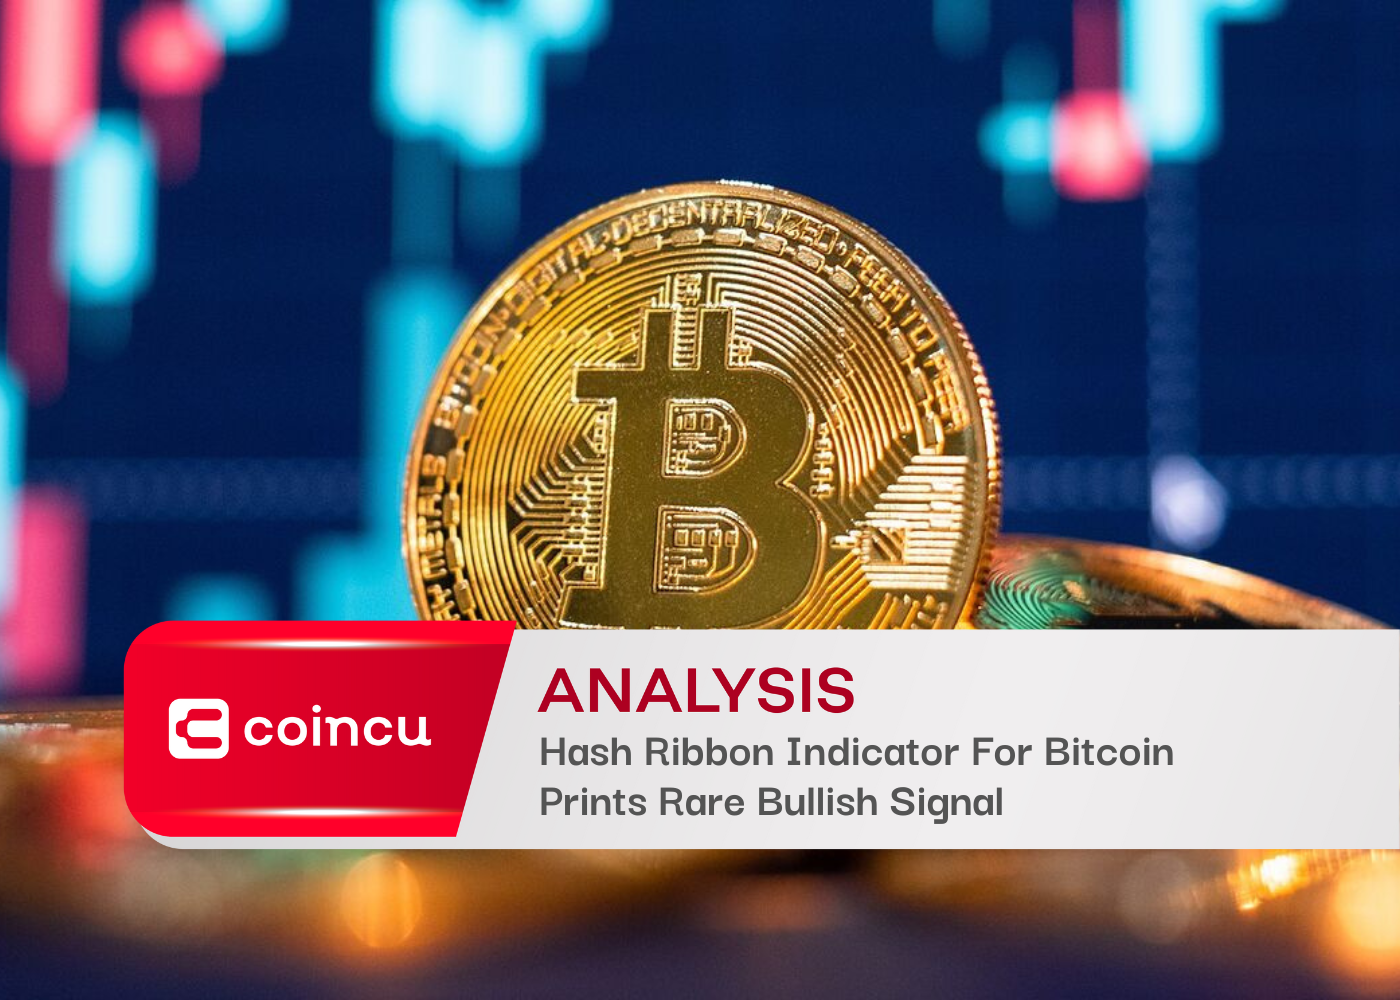 Hash Ribbon Indicator For Bitcoin